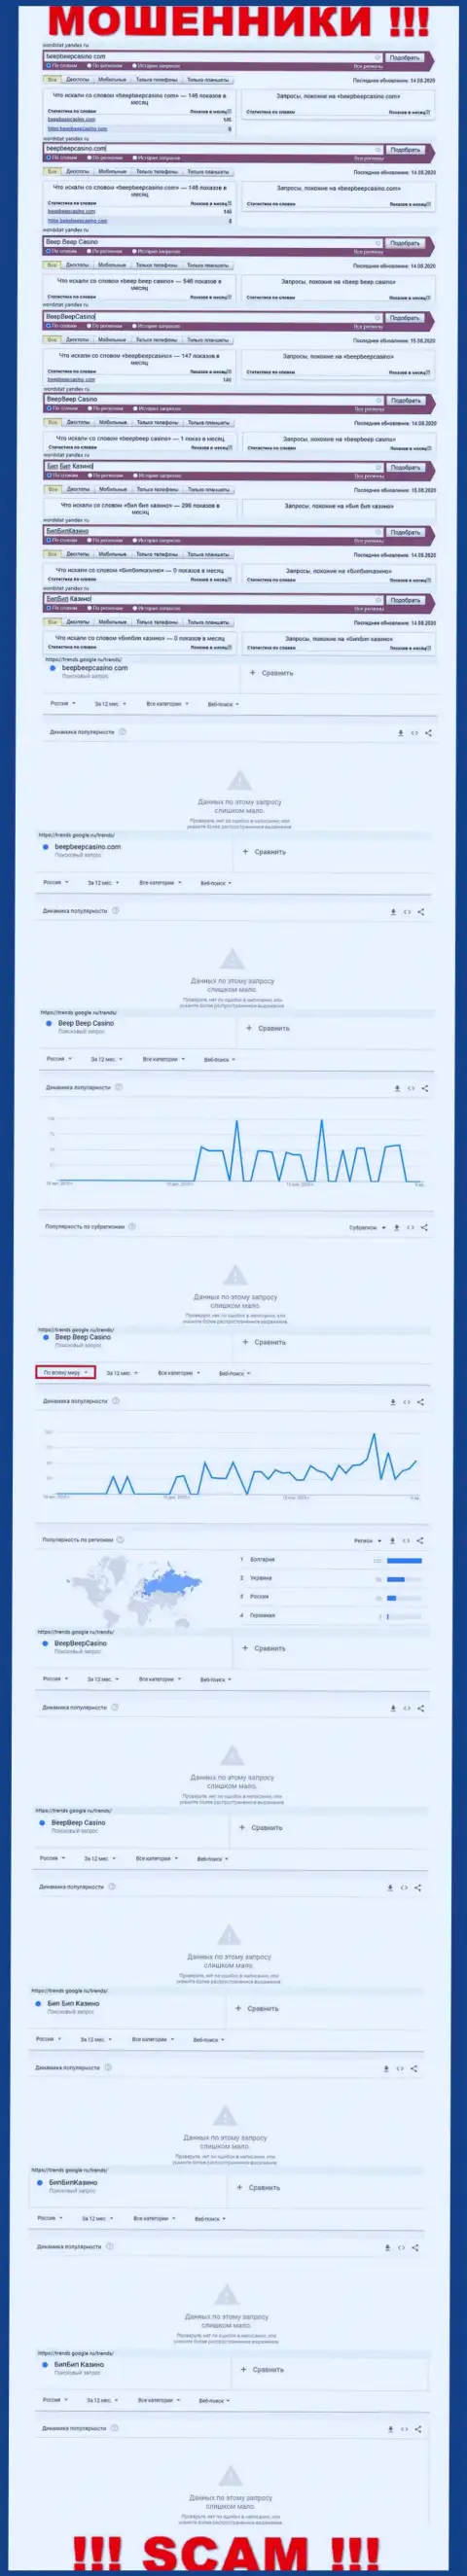 Какое количество людей пытались отыскать сведения об BeepBeepCasino Com - статистика онлайн-запросов по данной организации